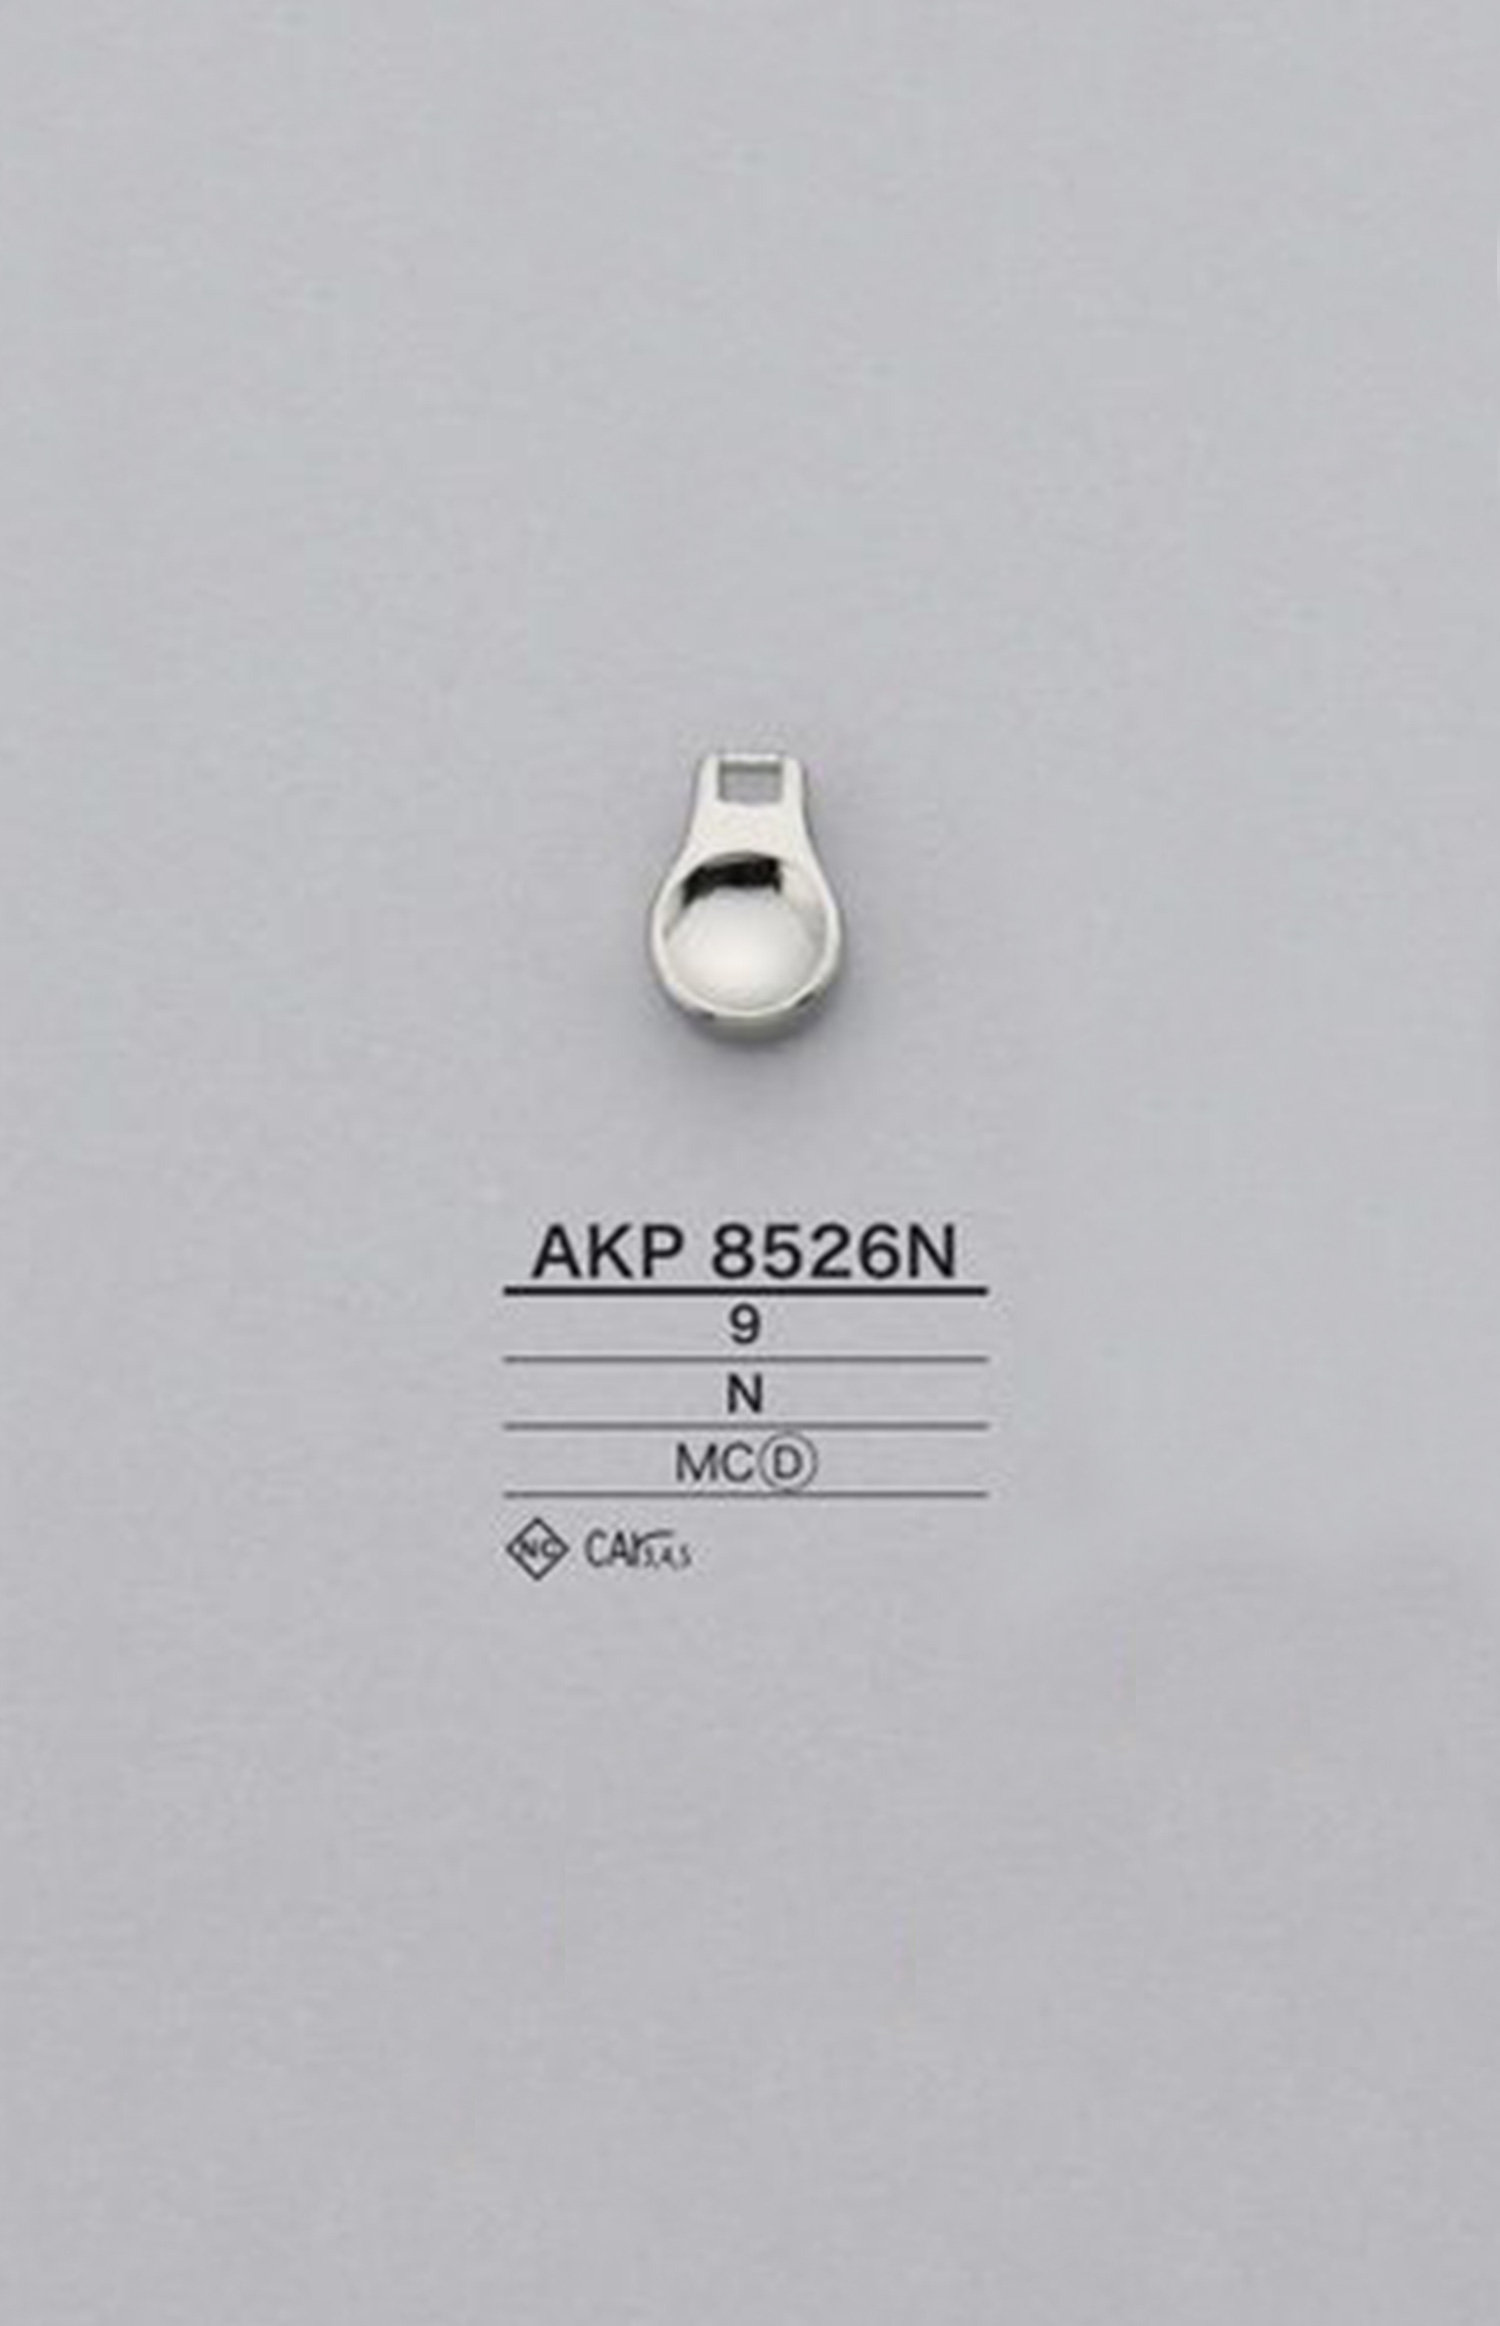 AKP8526N Runder Reißverschlusspunkt (Zuglasche) IRIS